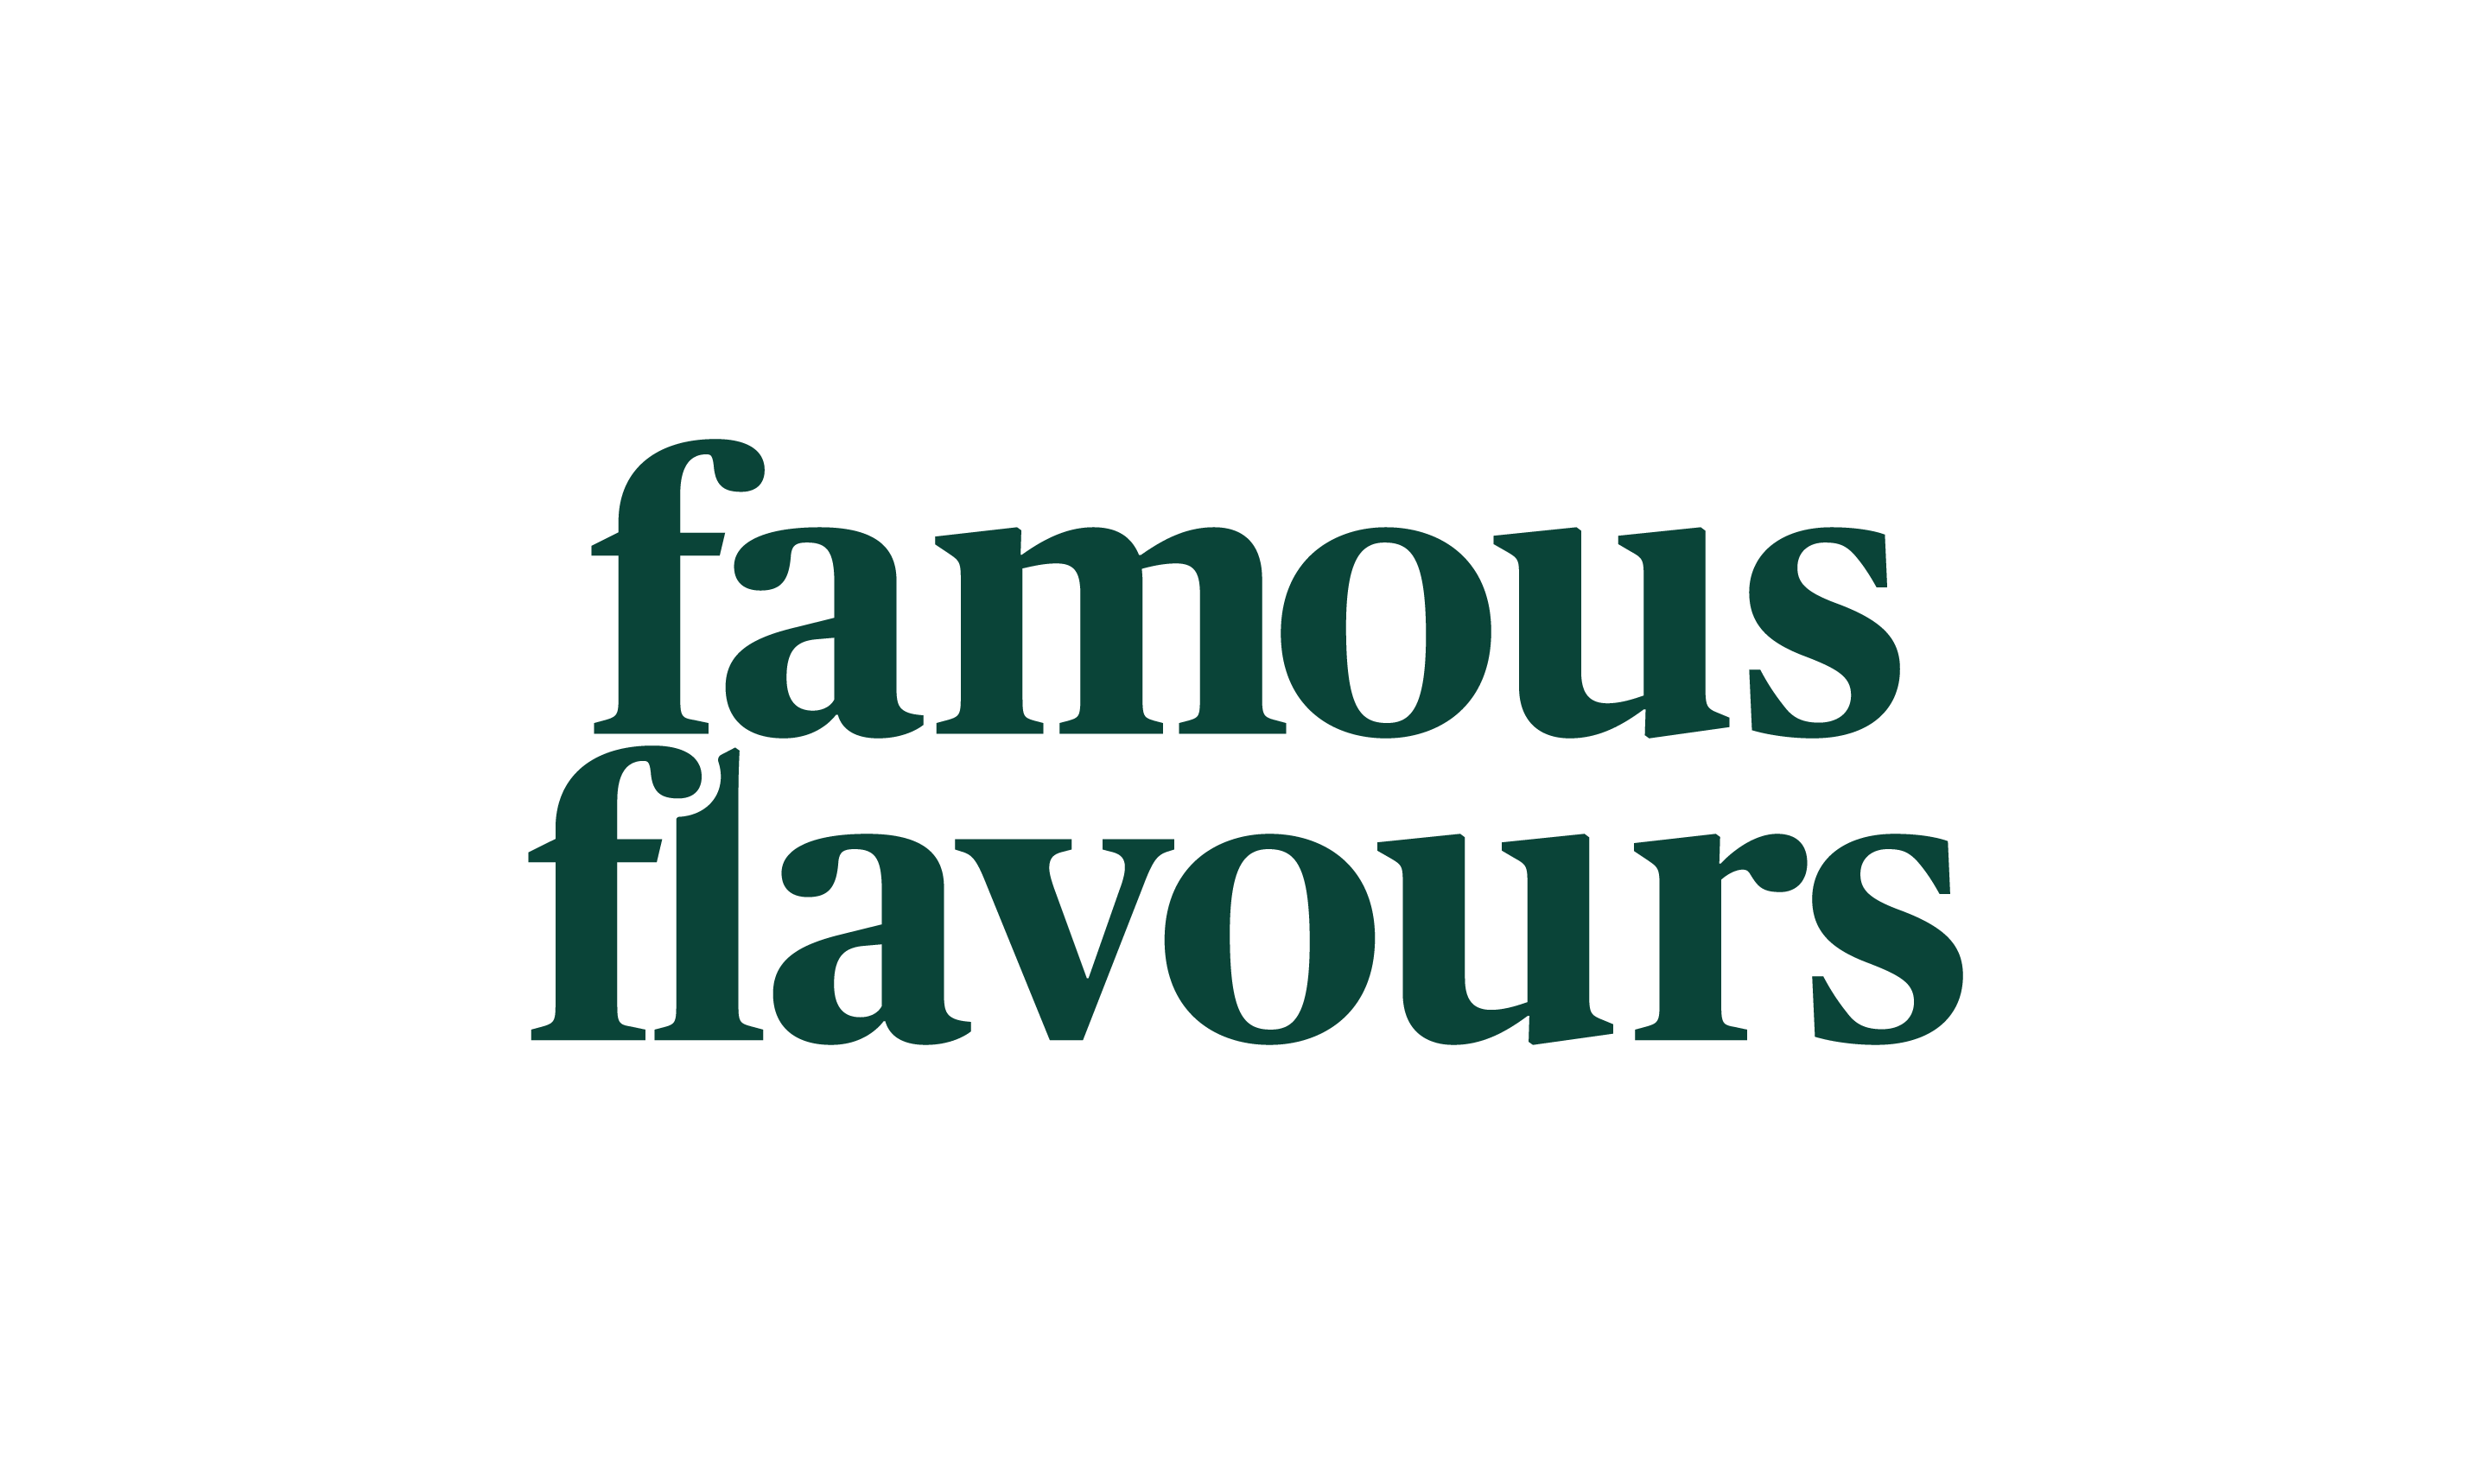 famous_flavours_logo_groen_pms3308c